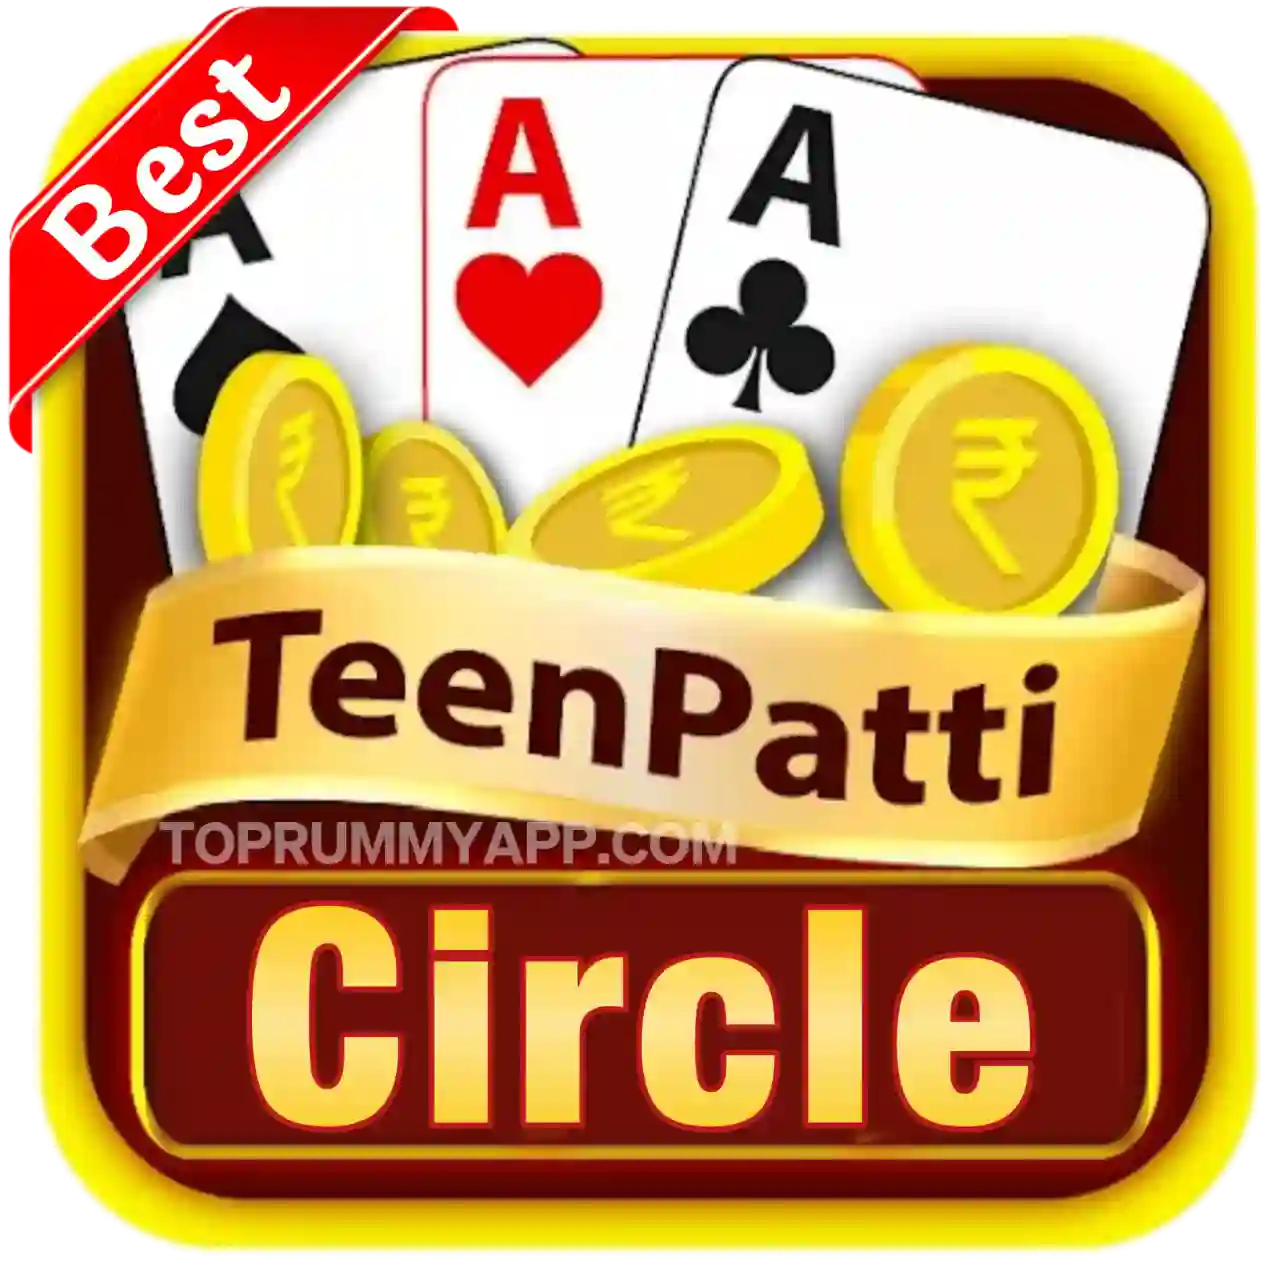 Teen Patti Circle Apk Download - Teen Patti Winner Apk Download